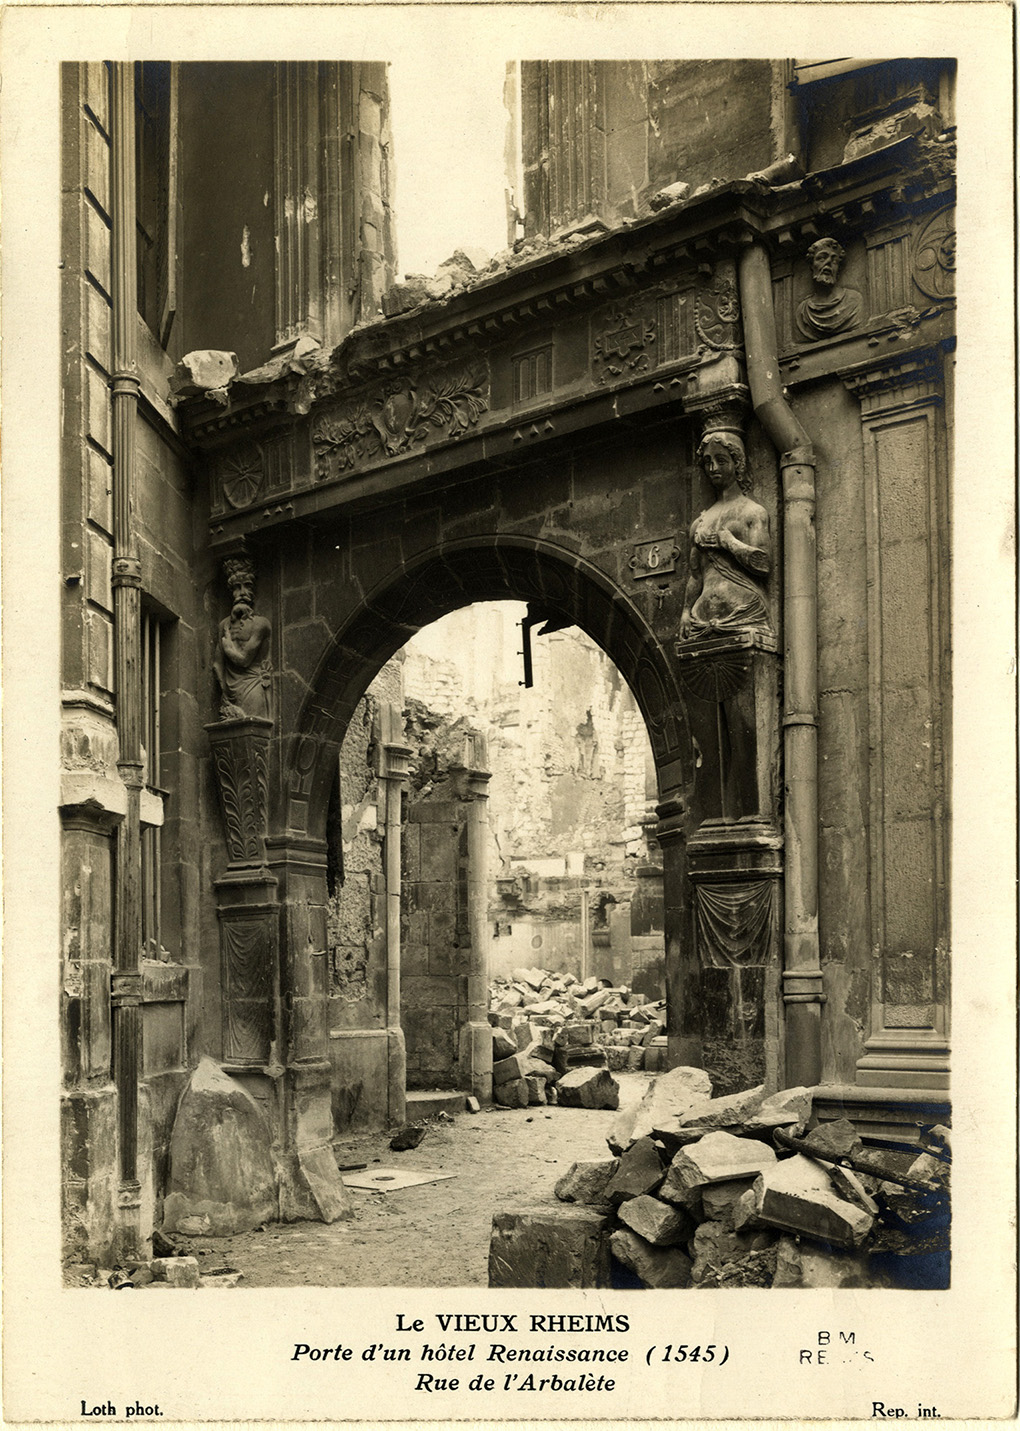 Le Vieux Reims. Porte d'un hôtel Renaissance (1545) [en ruines], rue de l'Arbalète. Bm Reims, Demaison MC II 53